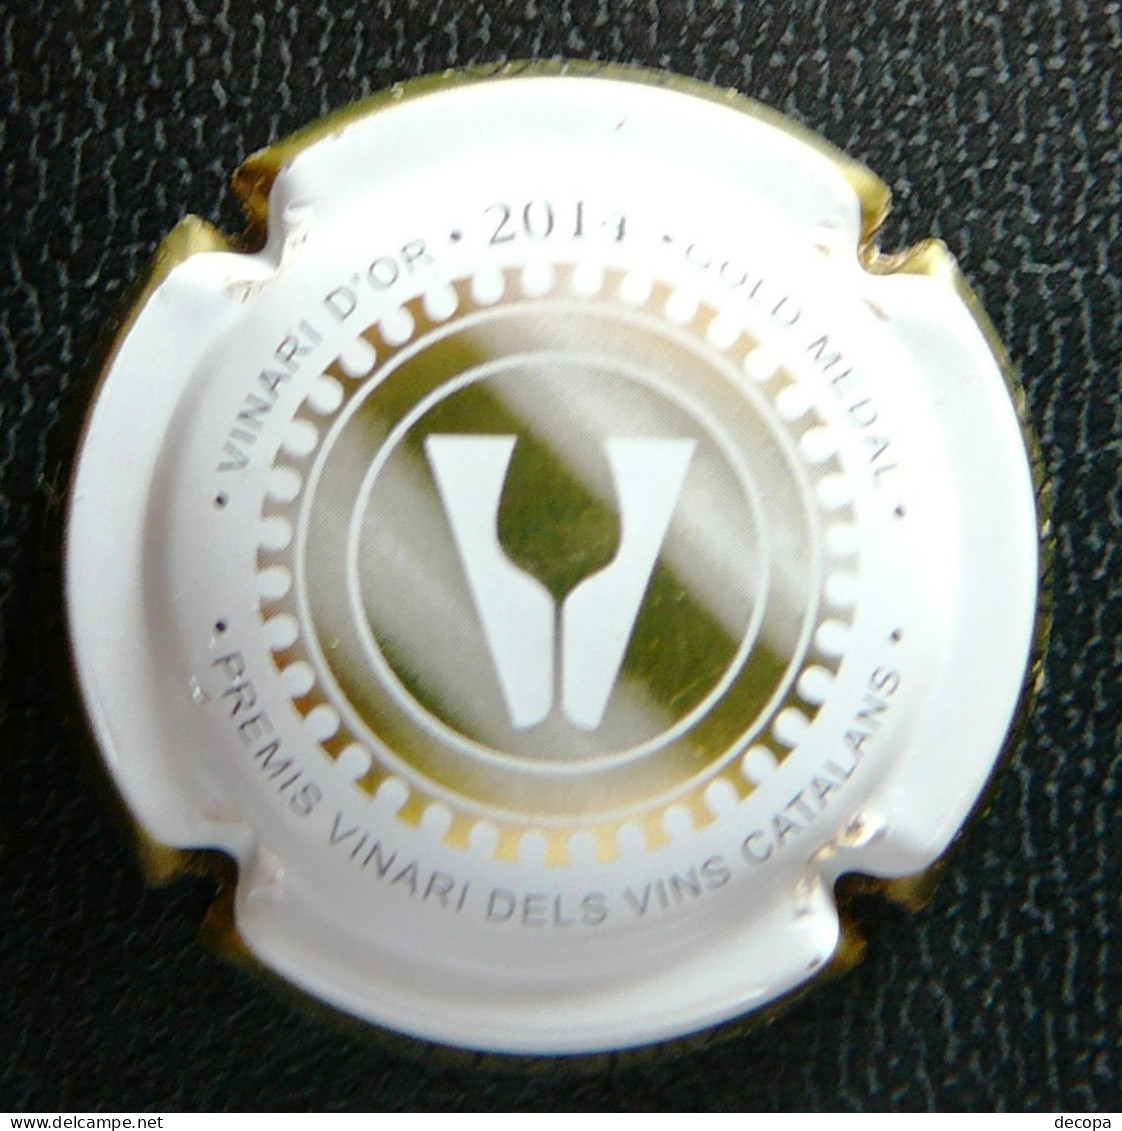 (dc-057) Capsule Cava Pere Olivella Galimany - Gold Medal 2014   -  Placa Premis Vinari Dels Vins Catalans - Schaumwein - Sekt